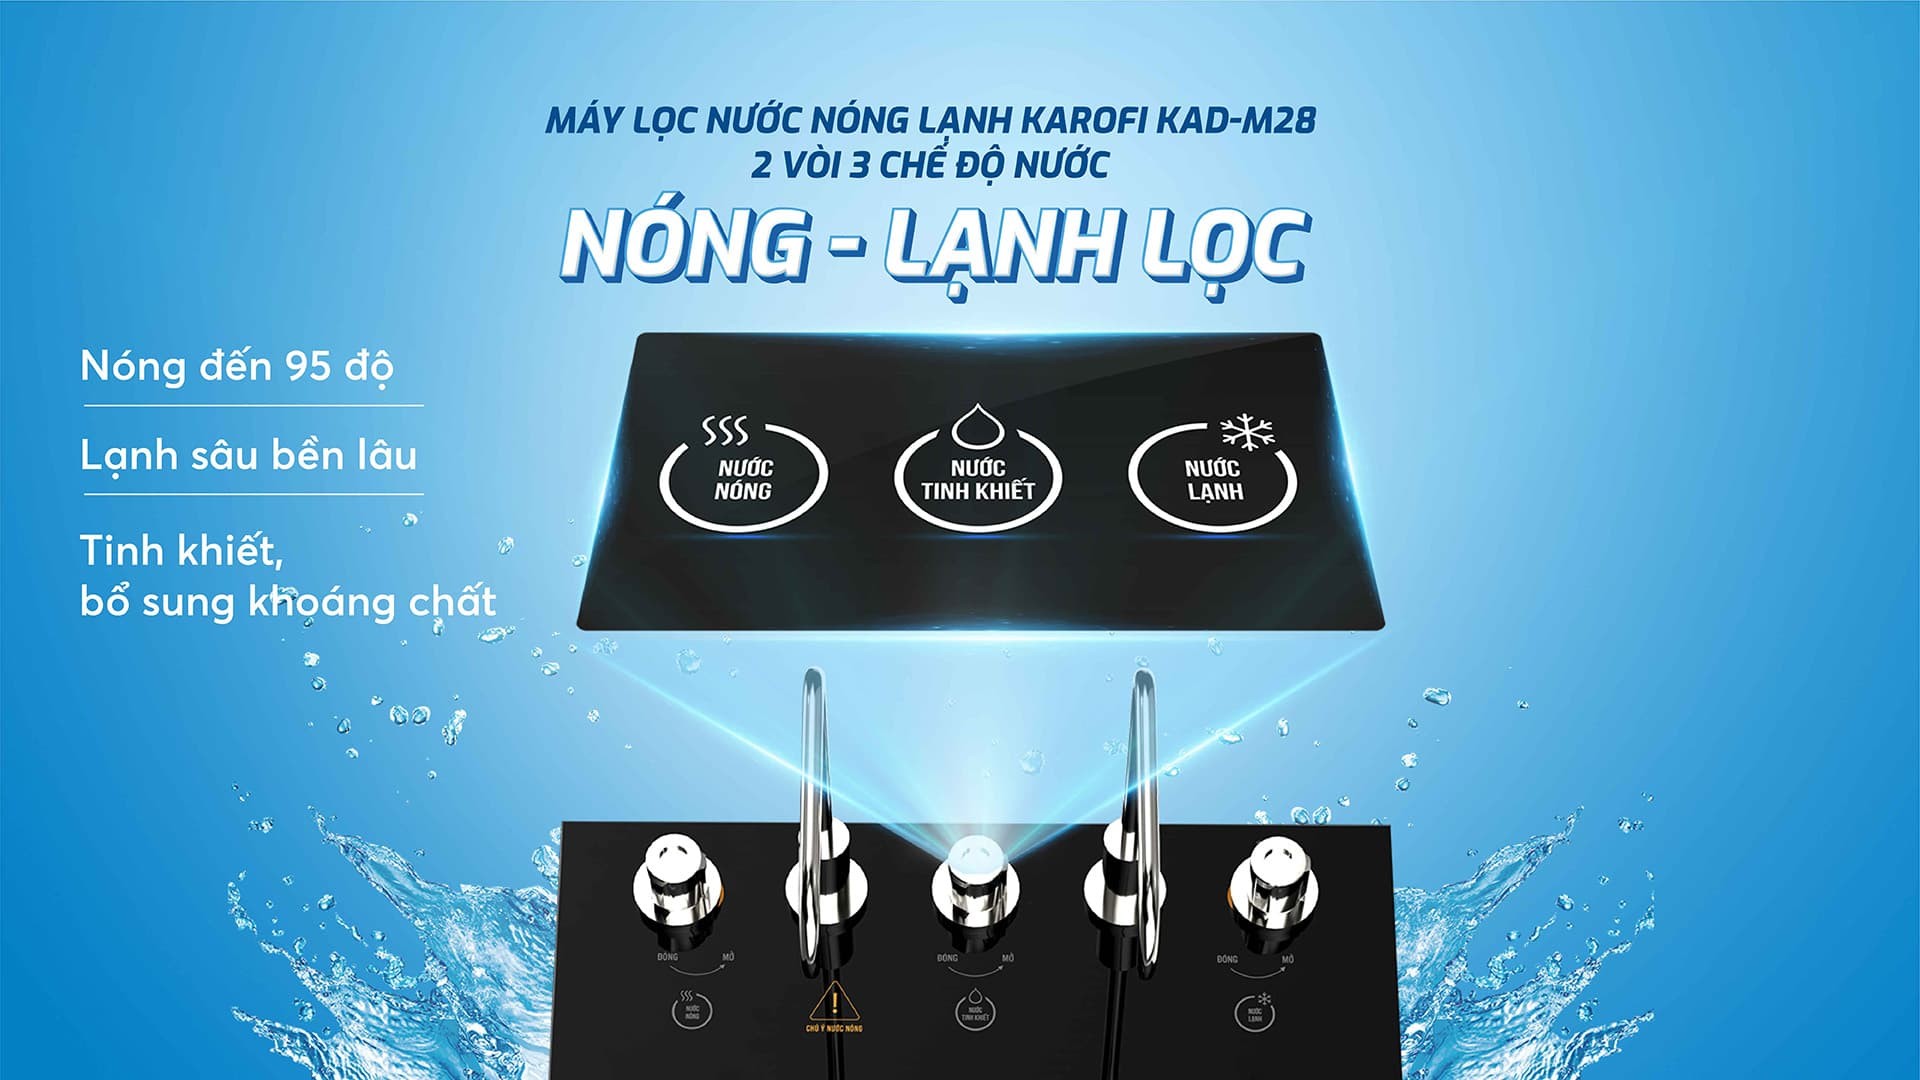 may-loc-nuoc-nong-lanh-karofi-kad-m28-10-loi